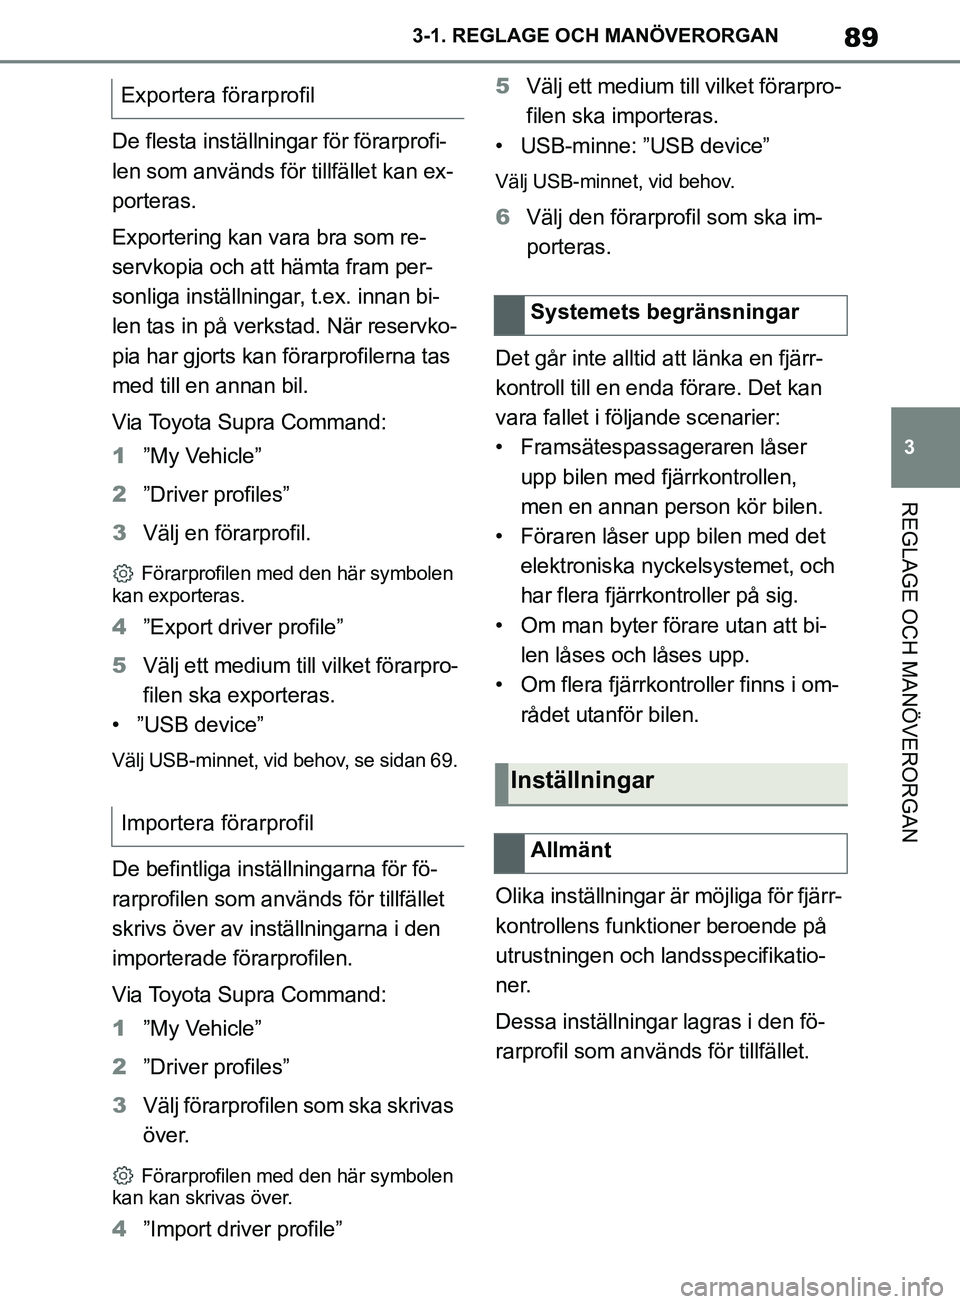 TOYOTA SUPRA 2019  Bruksanvisningar (in Swedish) 89
3
Supras instruktionsbok 3-1. REGLAGE O
CH MANÖVERORGAN
REGLAGE OCH MANÖVERORGAN
De flesta inställningar för förarprofi-
len som används för tillfället kan ex-
porteras.
Exportering kan var